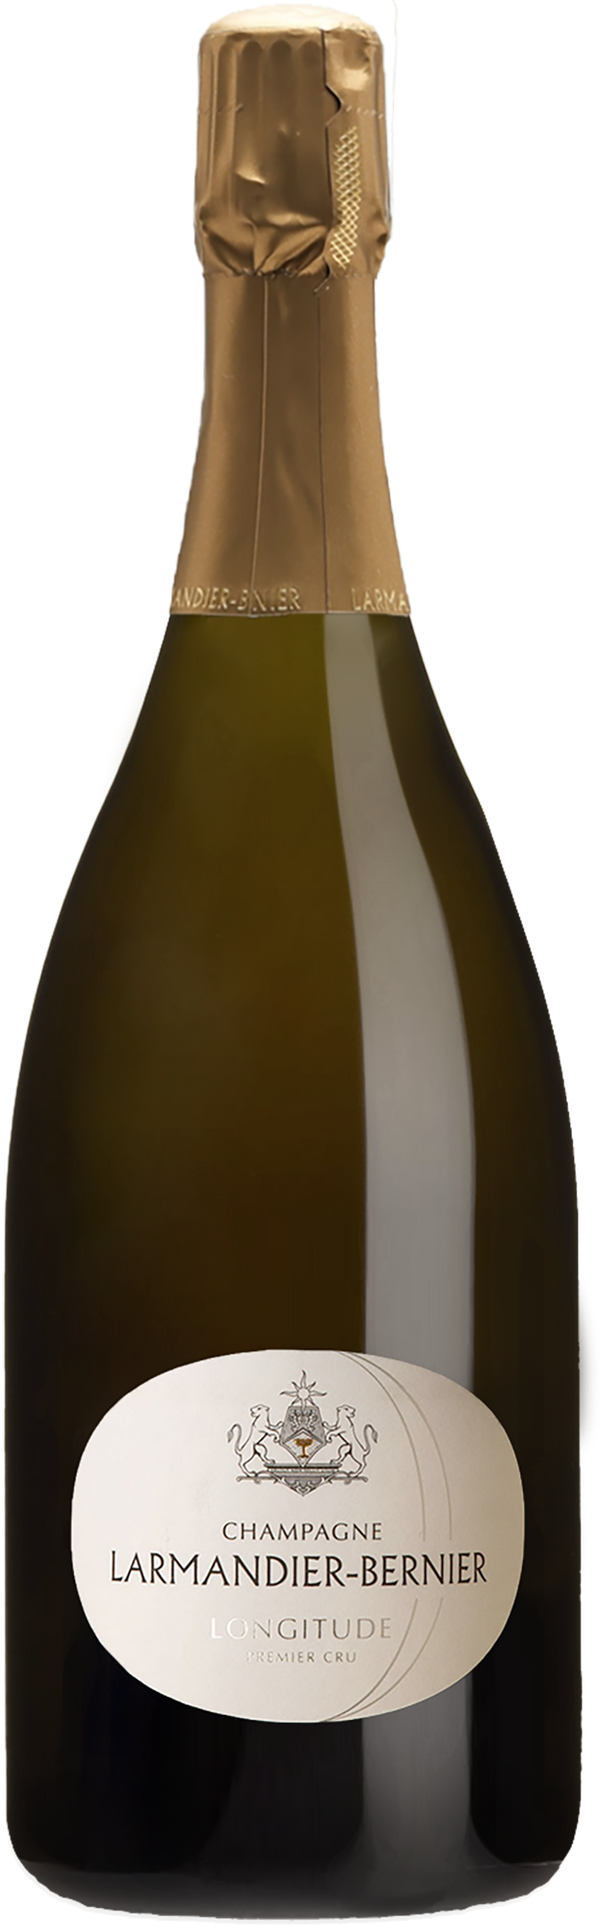 Champagne Larmandier-Bernier 1er Cru Longitude Blanc de Blancs NV (1500ml) (Base 16 Disg. Apr 2021)